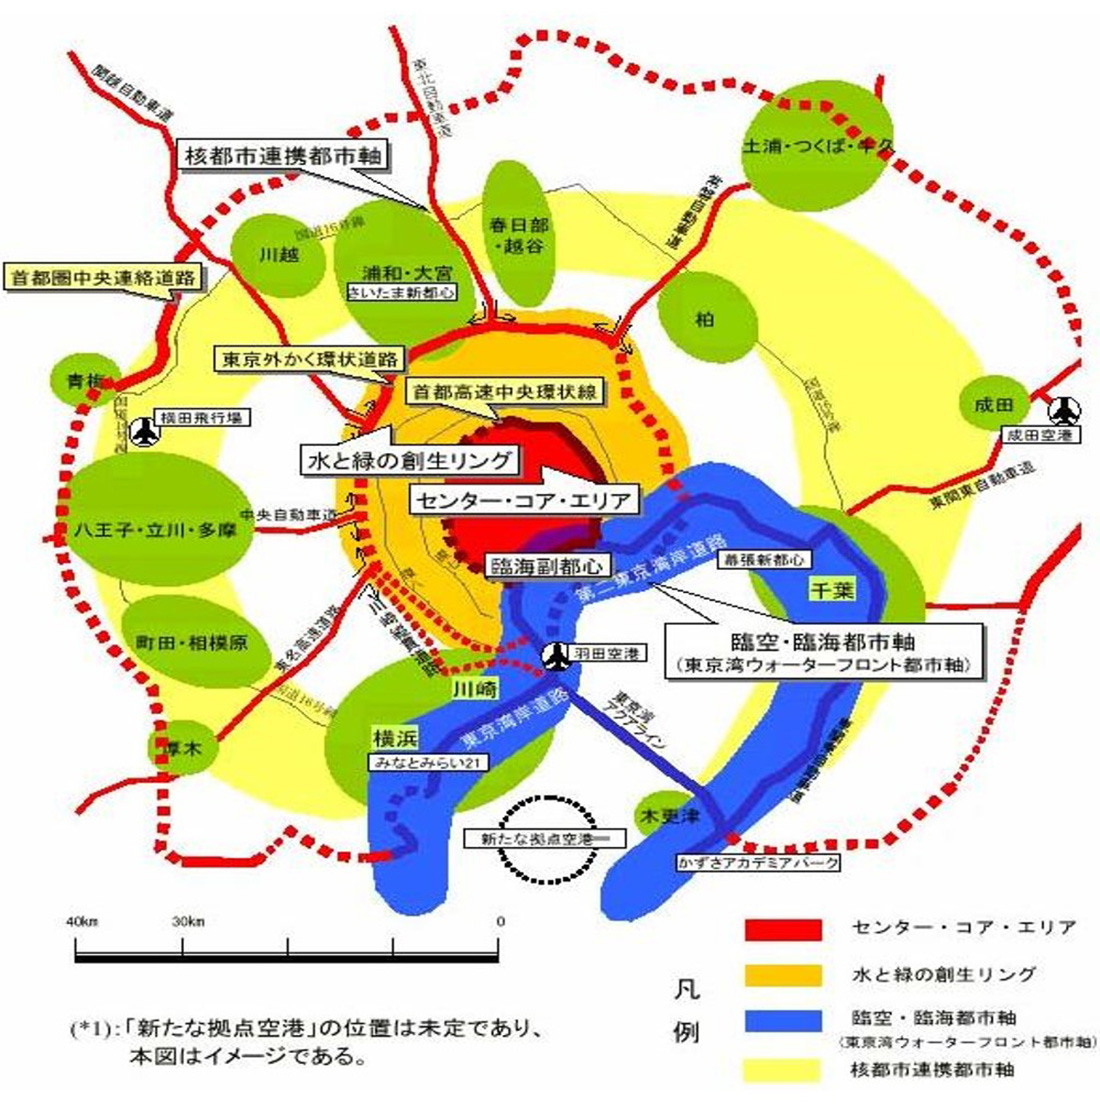 東京コラム【3】都市政策の変遷と都市再生